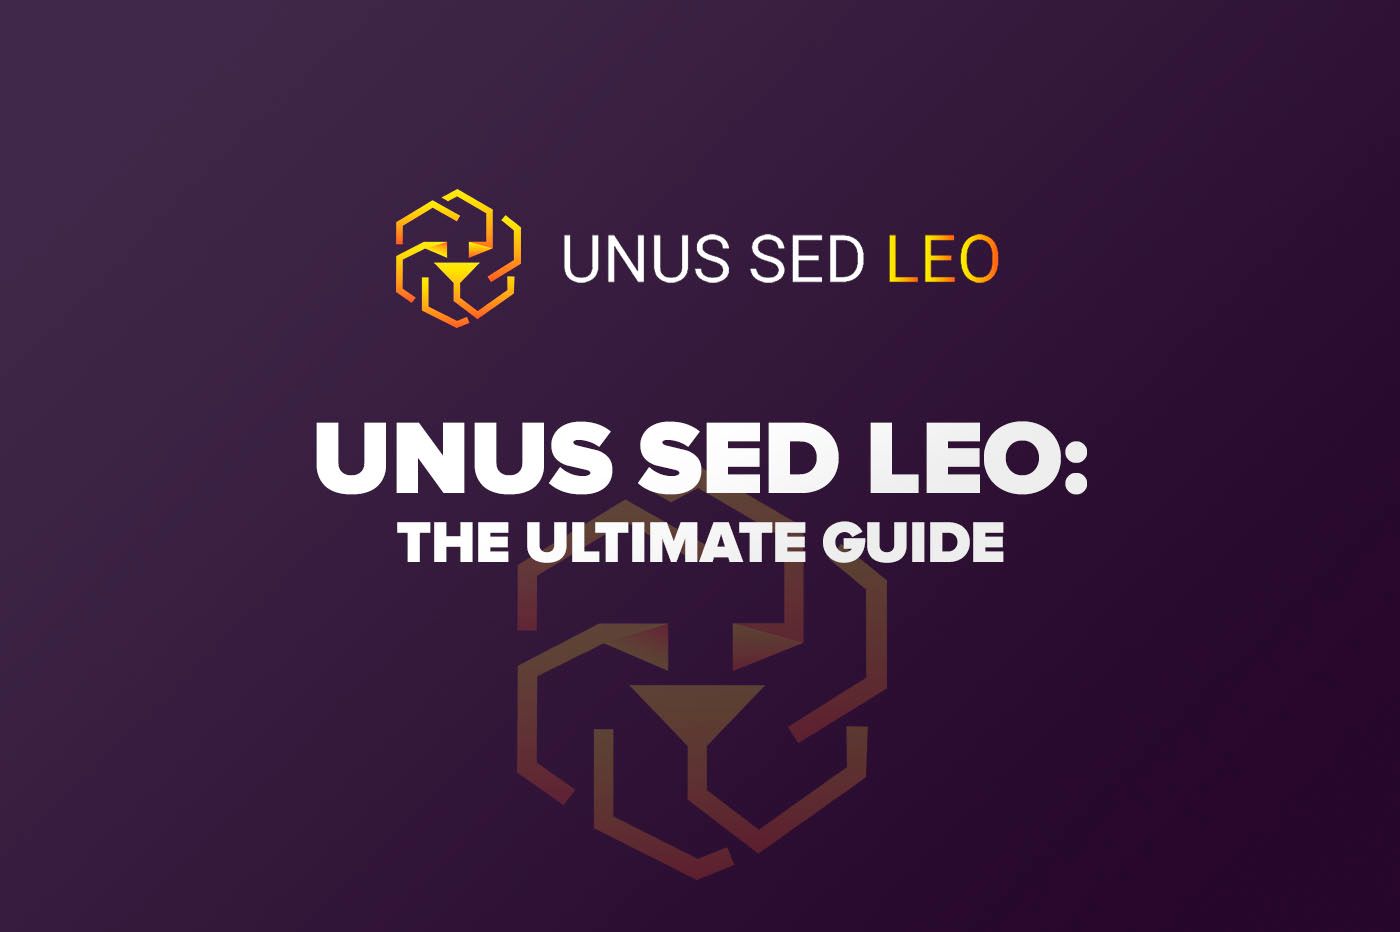 What is UNUS SED LEO